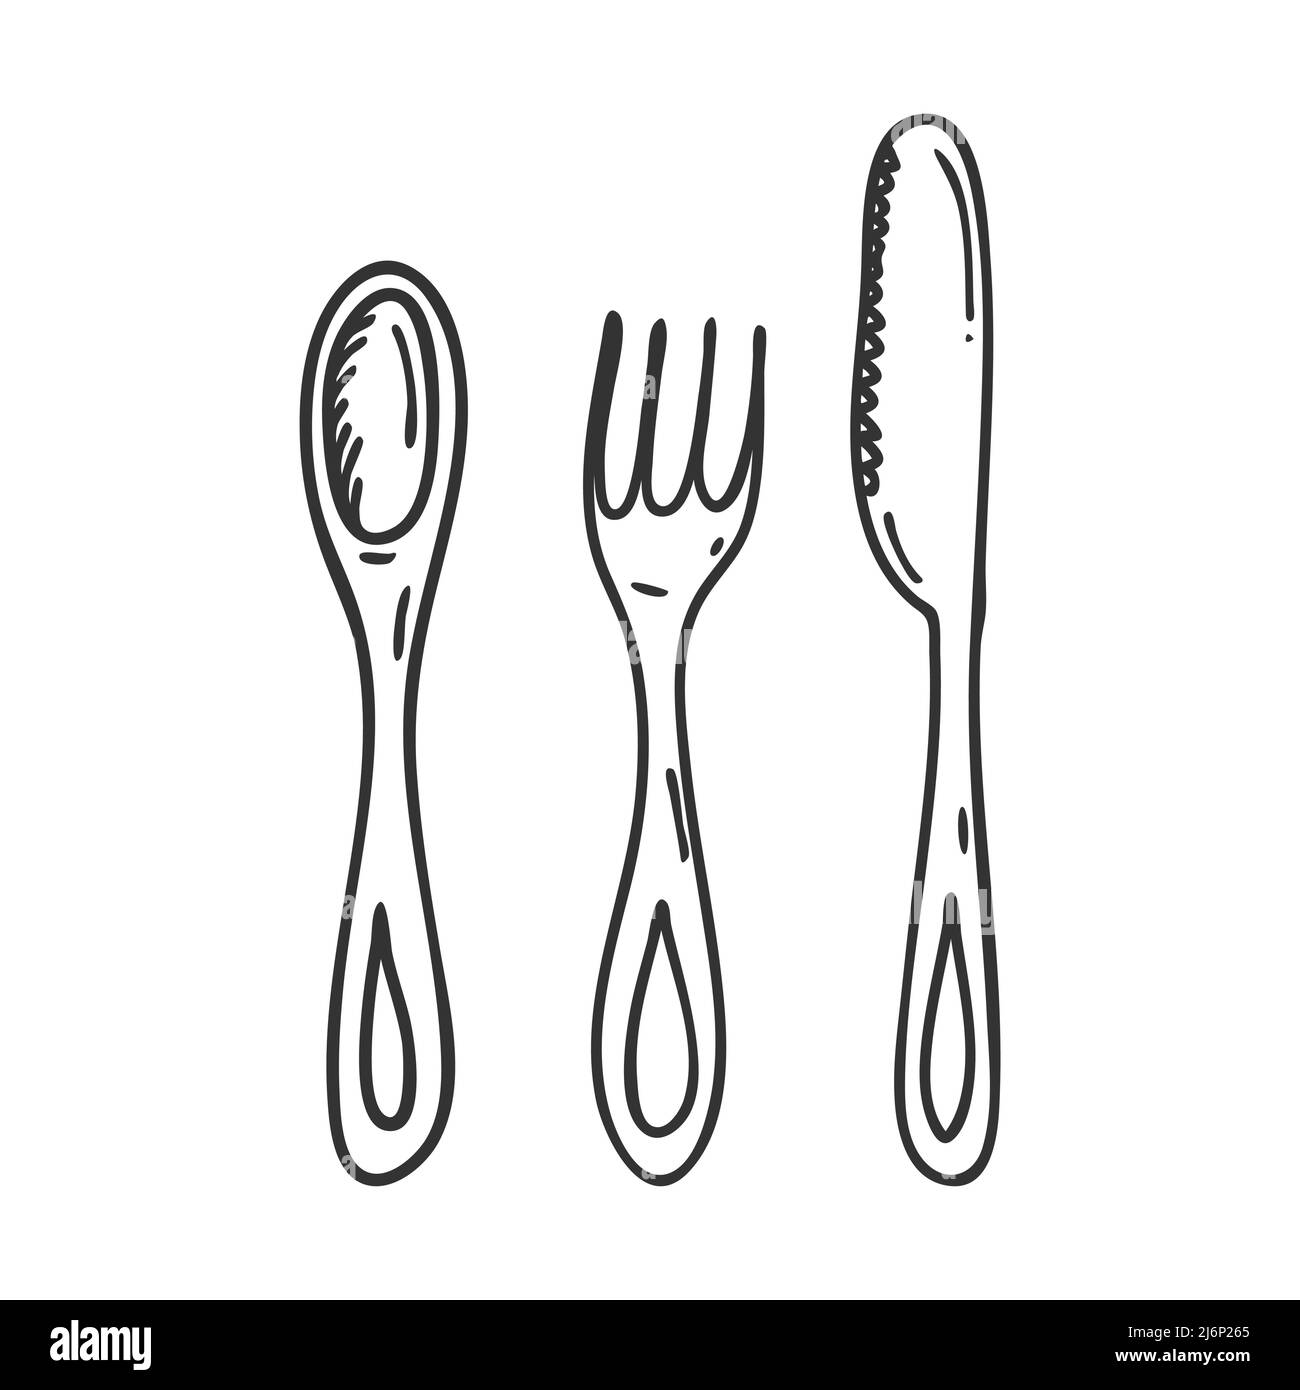 Ensemble de coutellerie style Doodle. Une cuillère, une fourchette et un couteau sont dessinés à la main et isolés sur un fond blanc. Illustration vectorielle noir et blanc Illustration de Vecteur